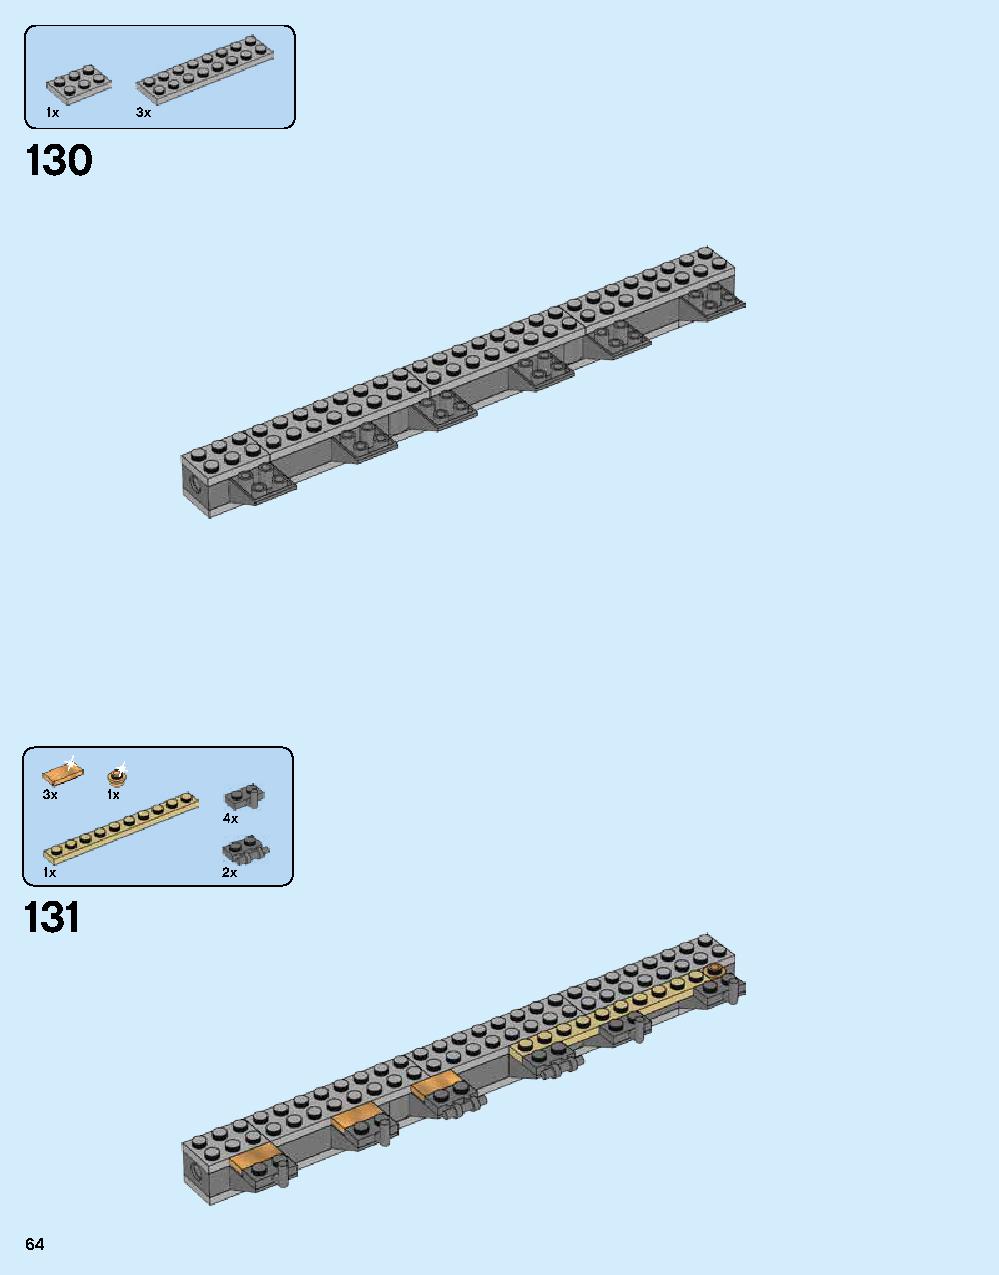 ニンジャゴー シティ 70620 レゴの商品情報 レゴの説明書・組立方法 64 page